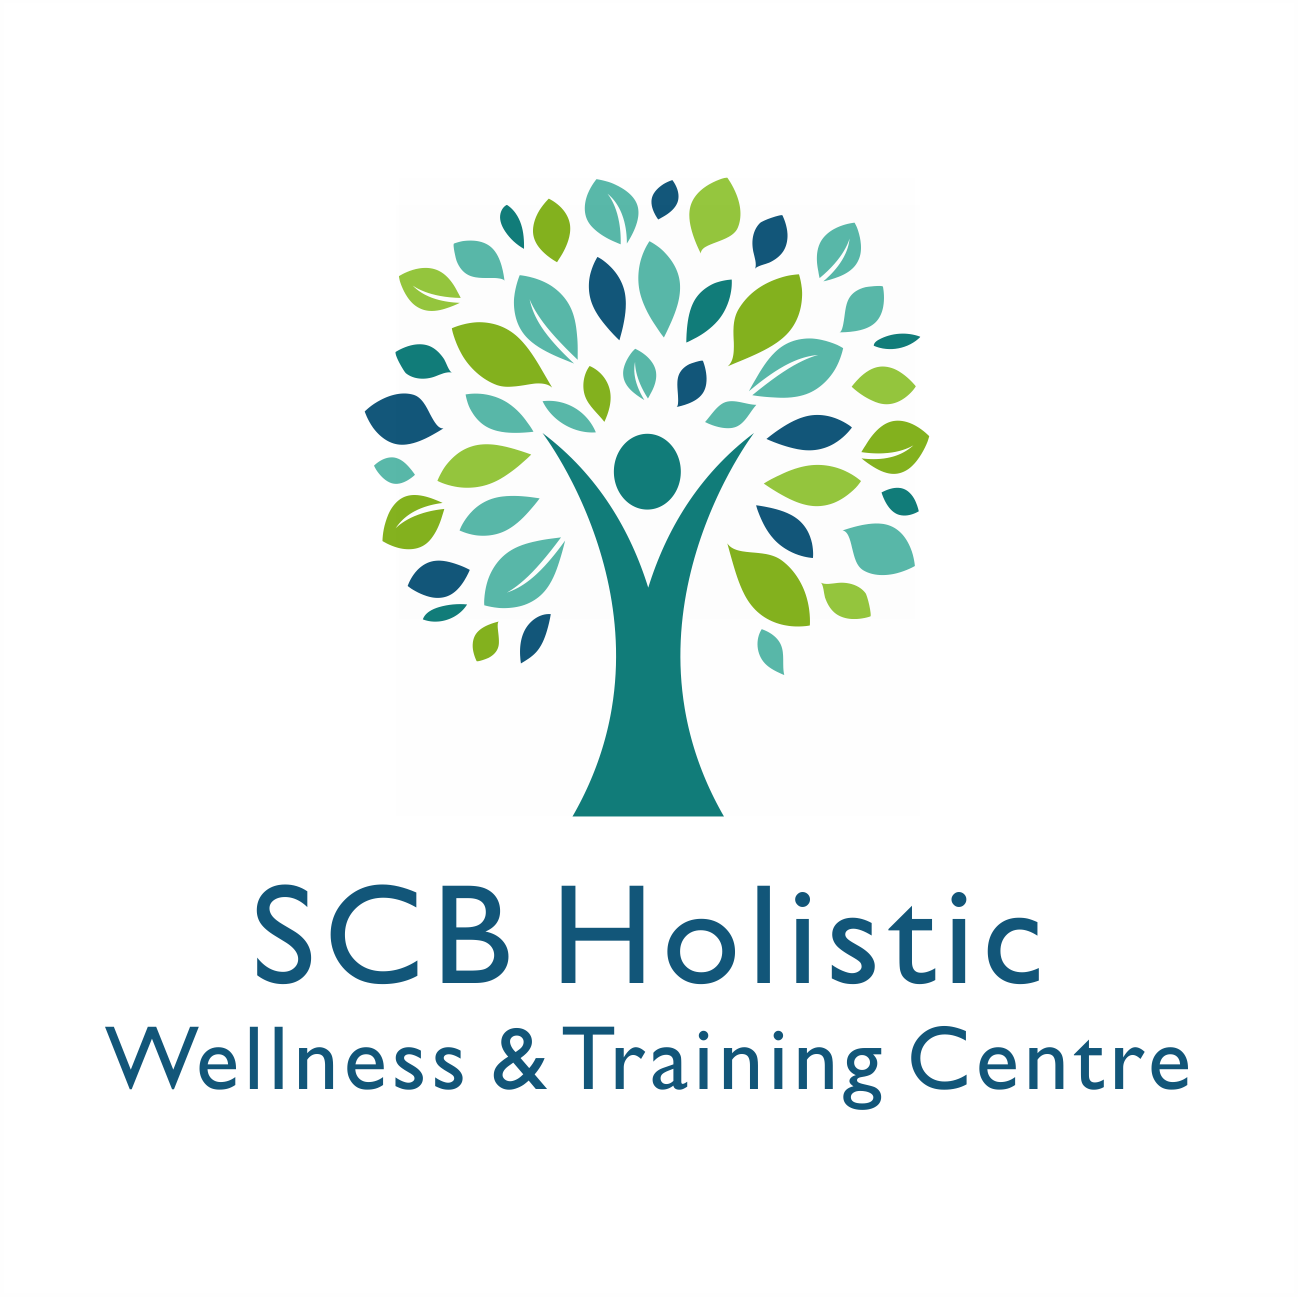 SCB holistic wellness & training centre